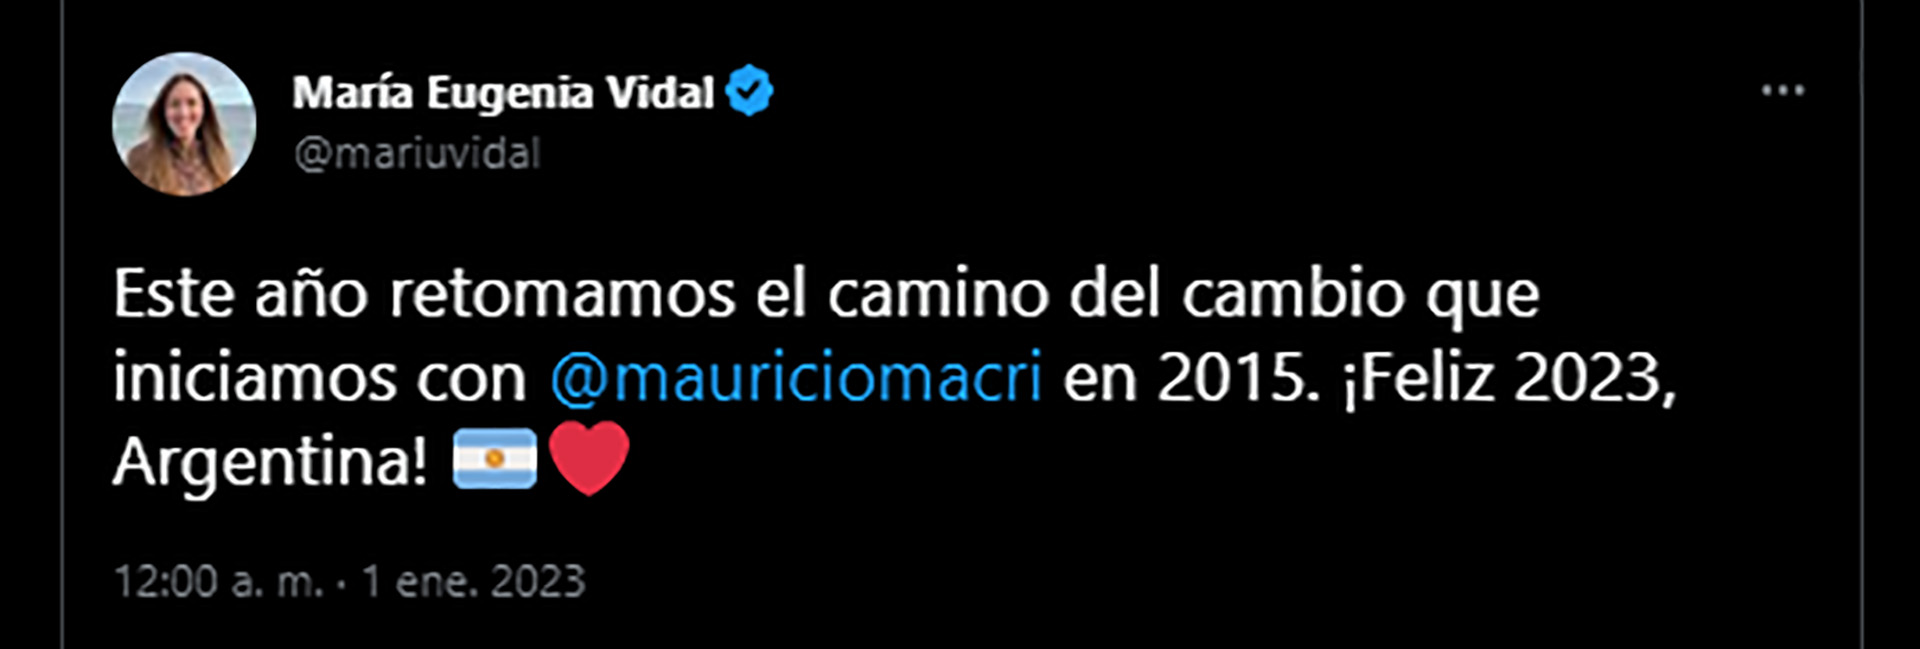 María Eugenia Vidal mencionó en su mensaje a Mauricio Macri 